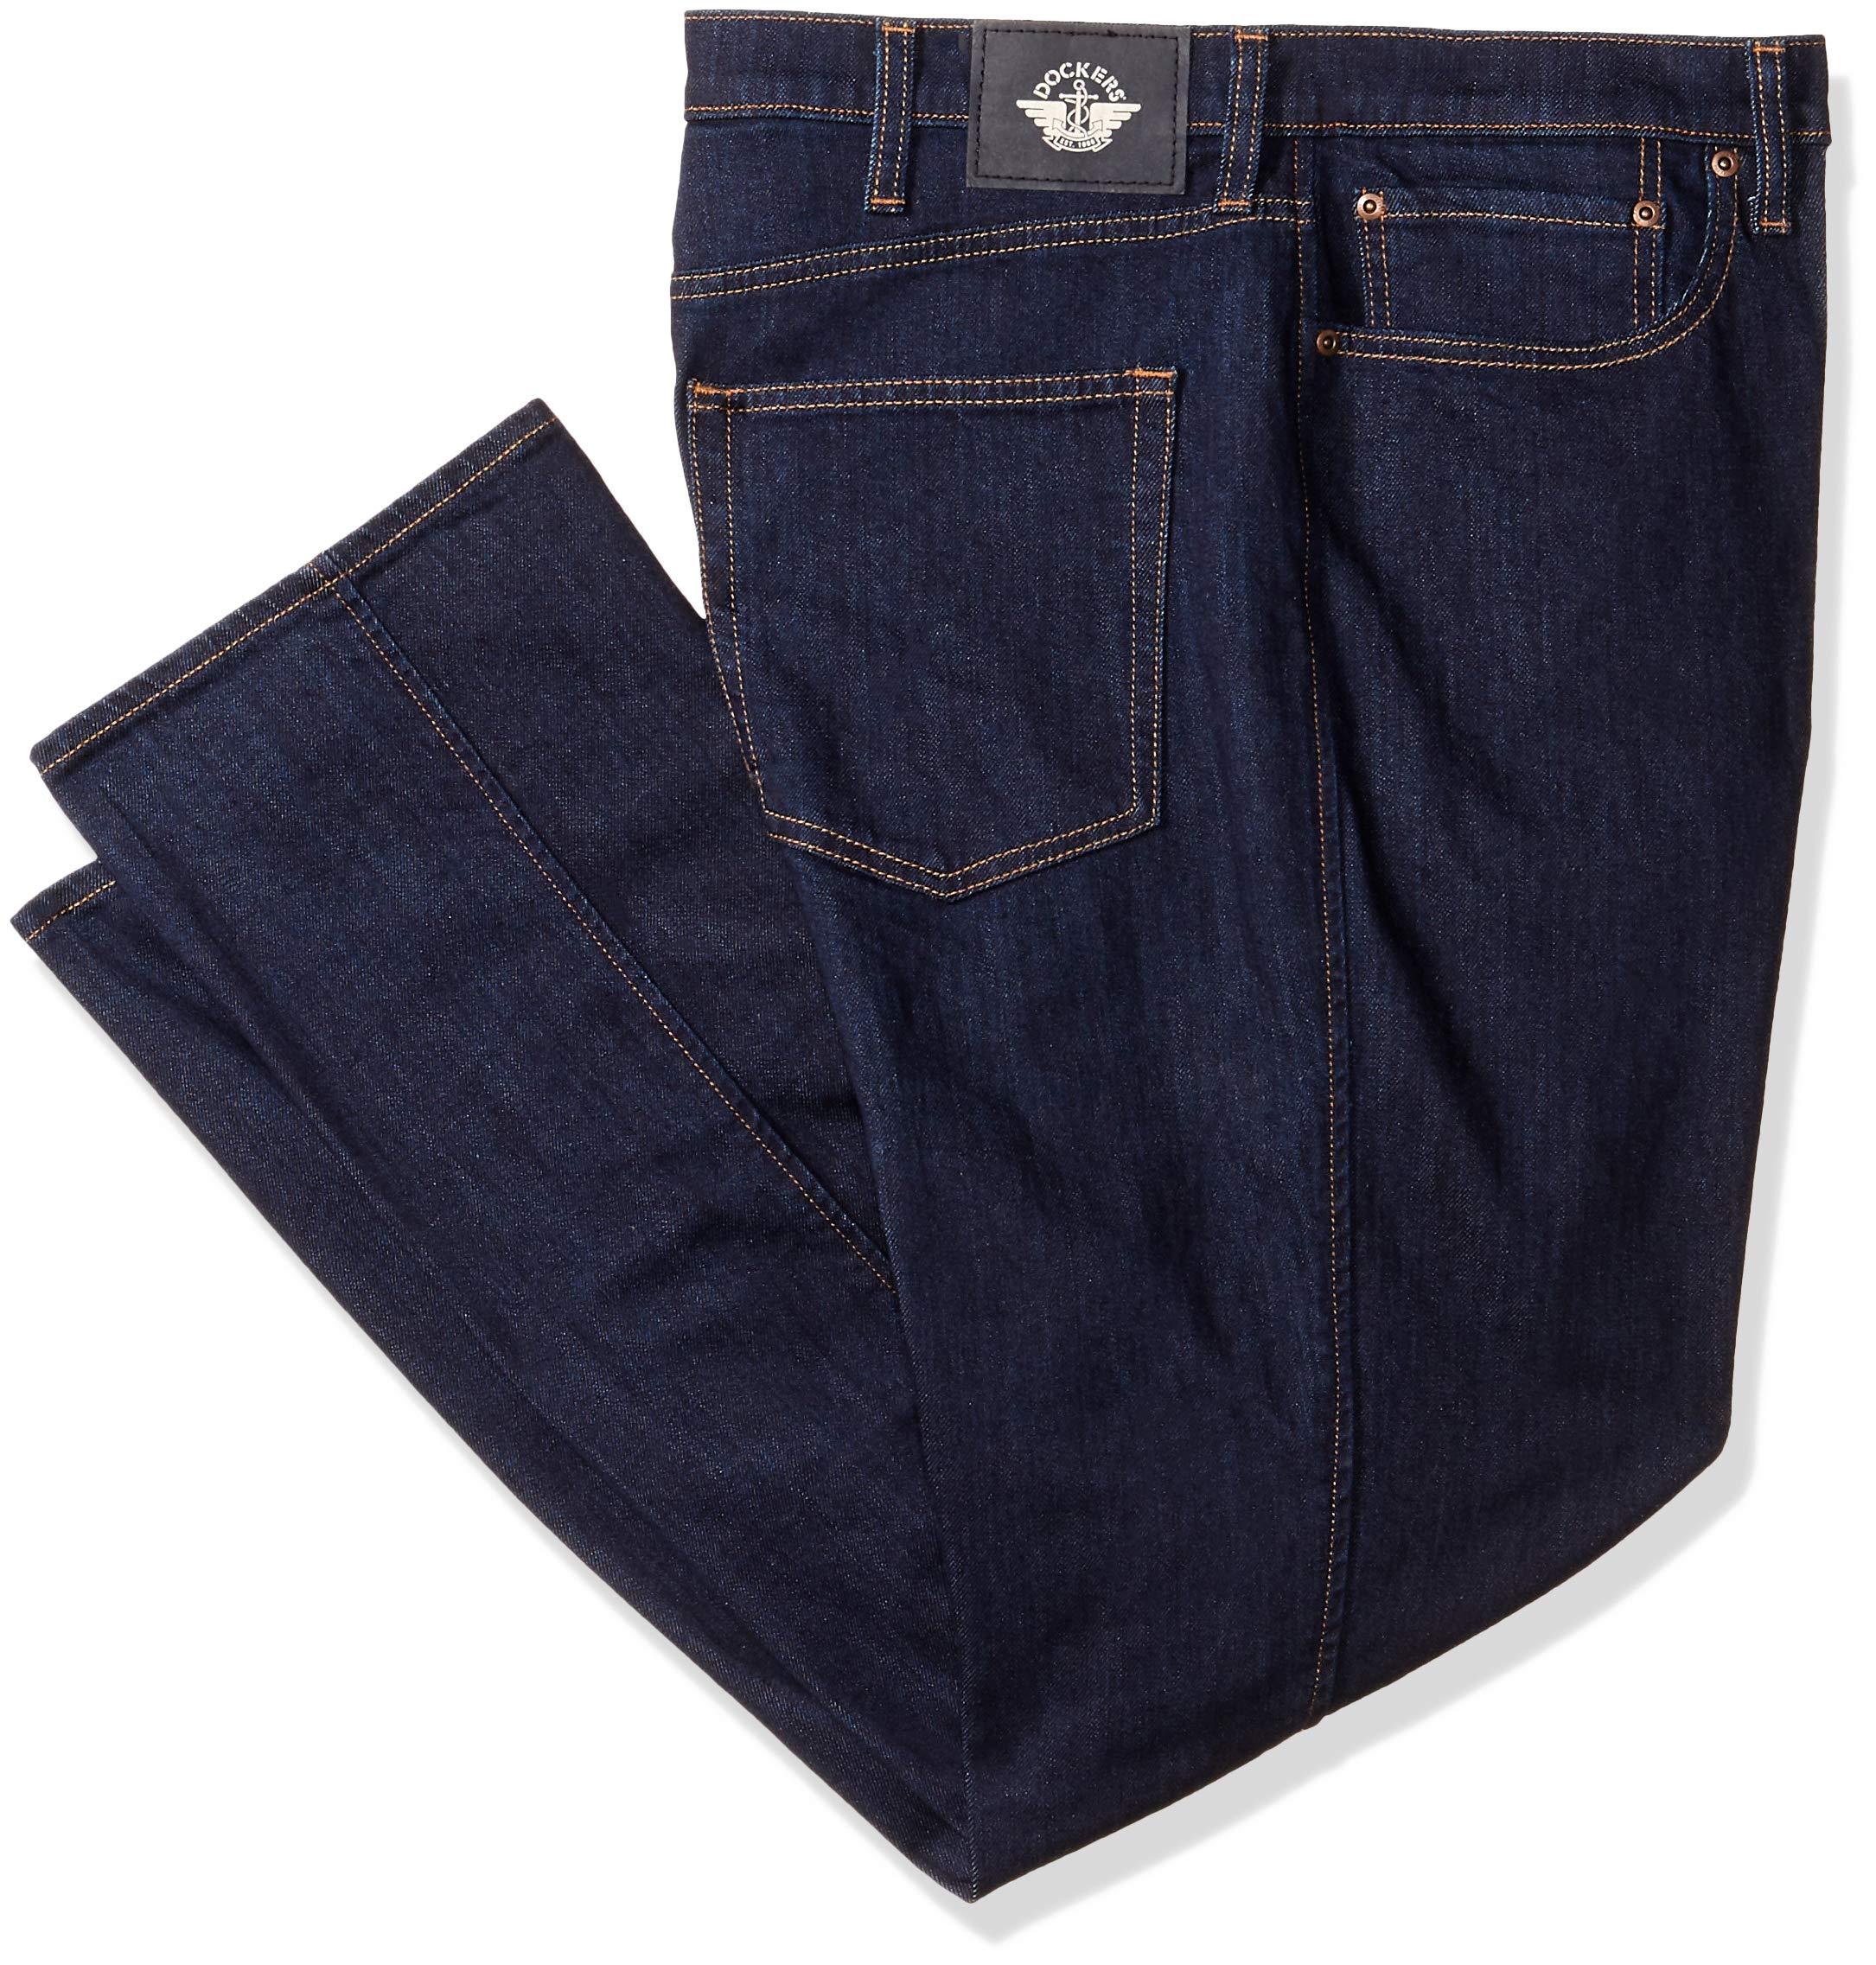 Dockers Straight Fit Jean Cut Denim Pants in Blue for Men - Lyst